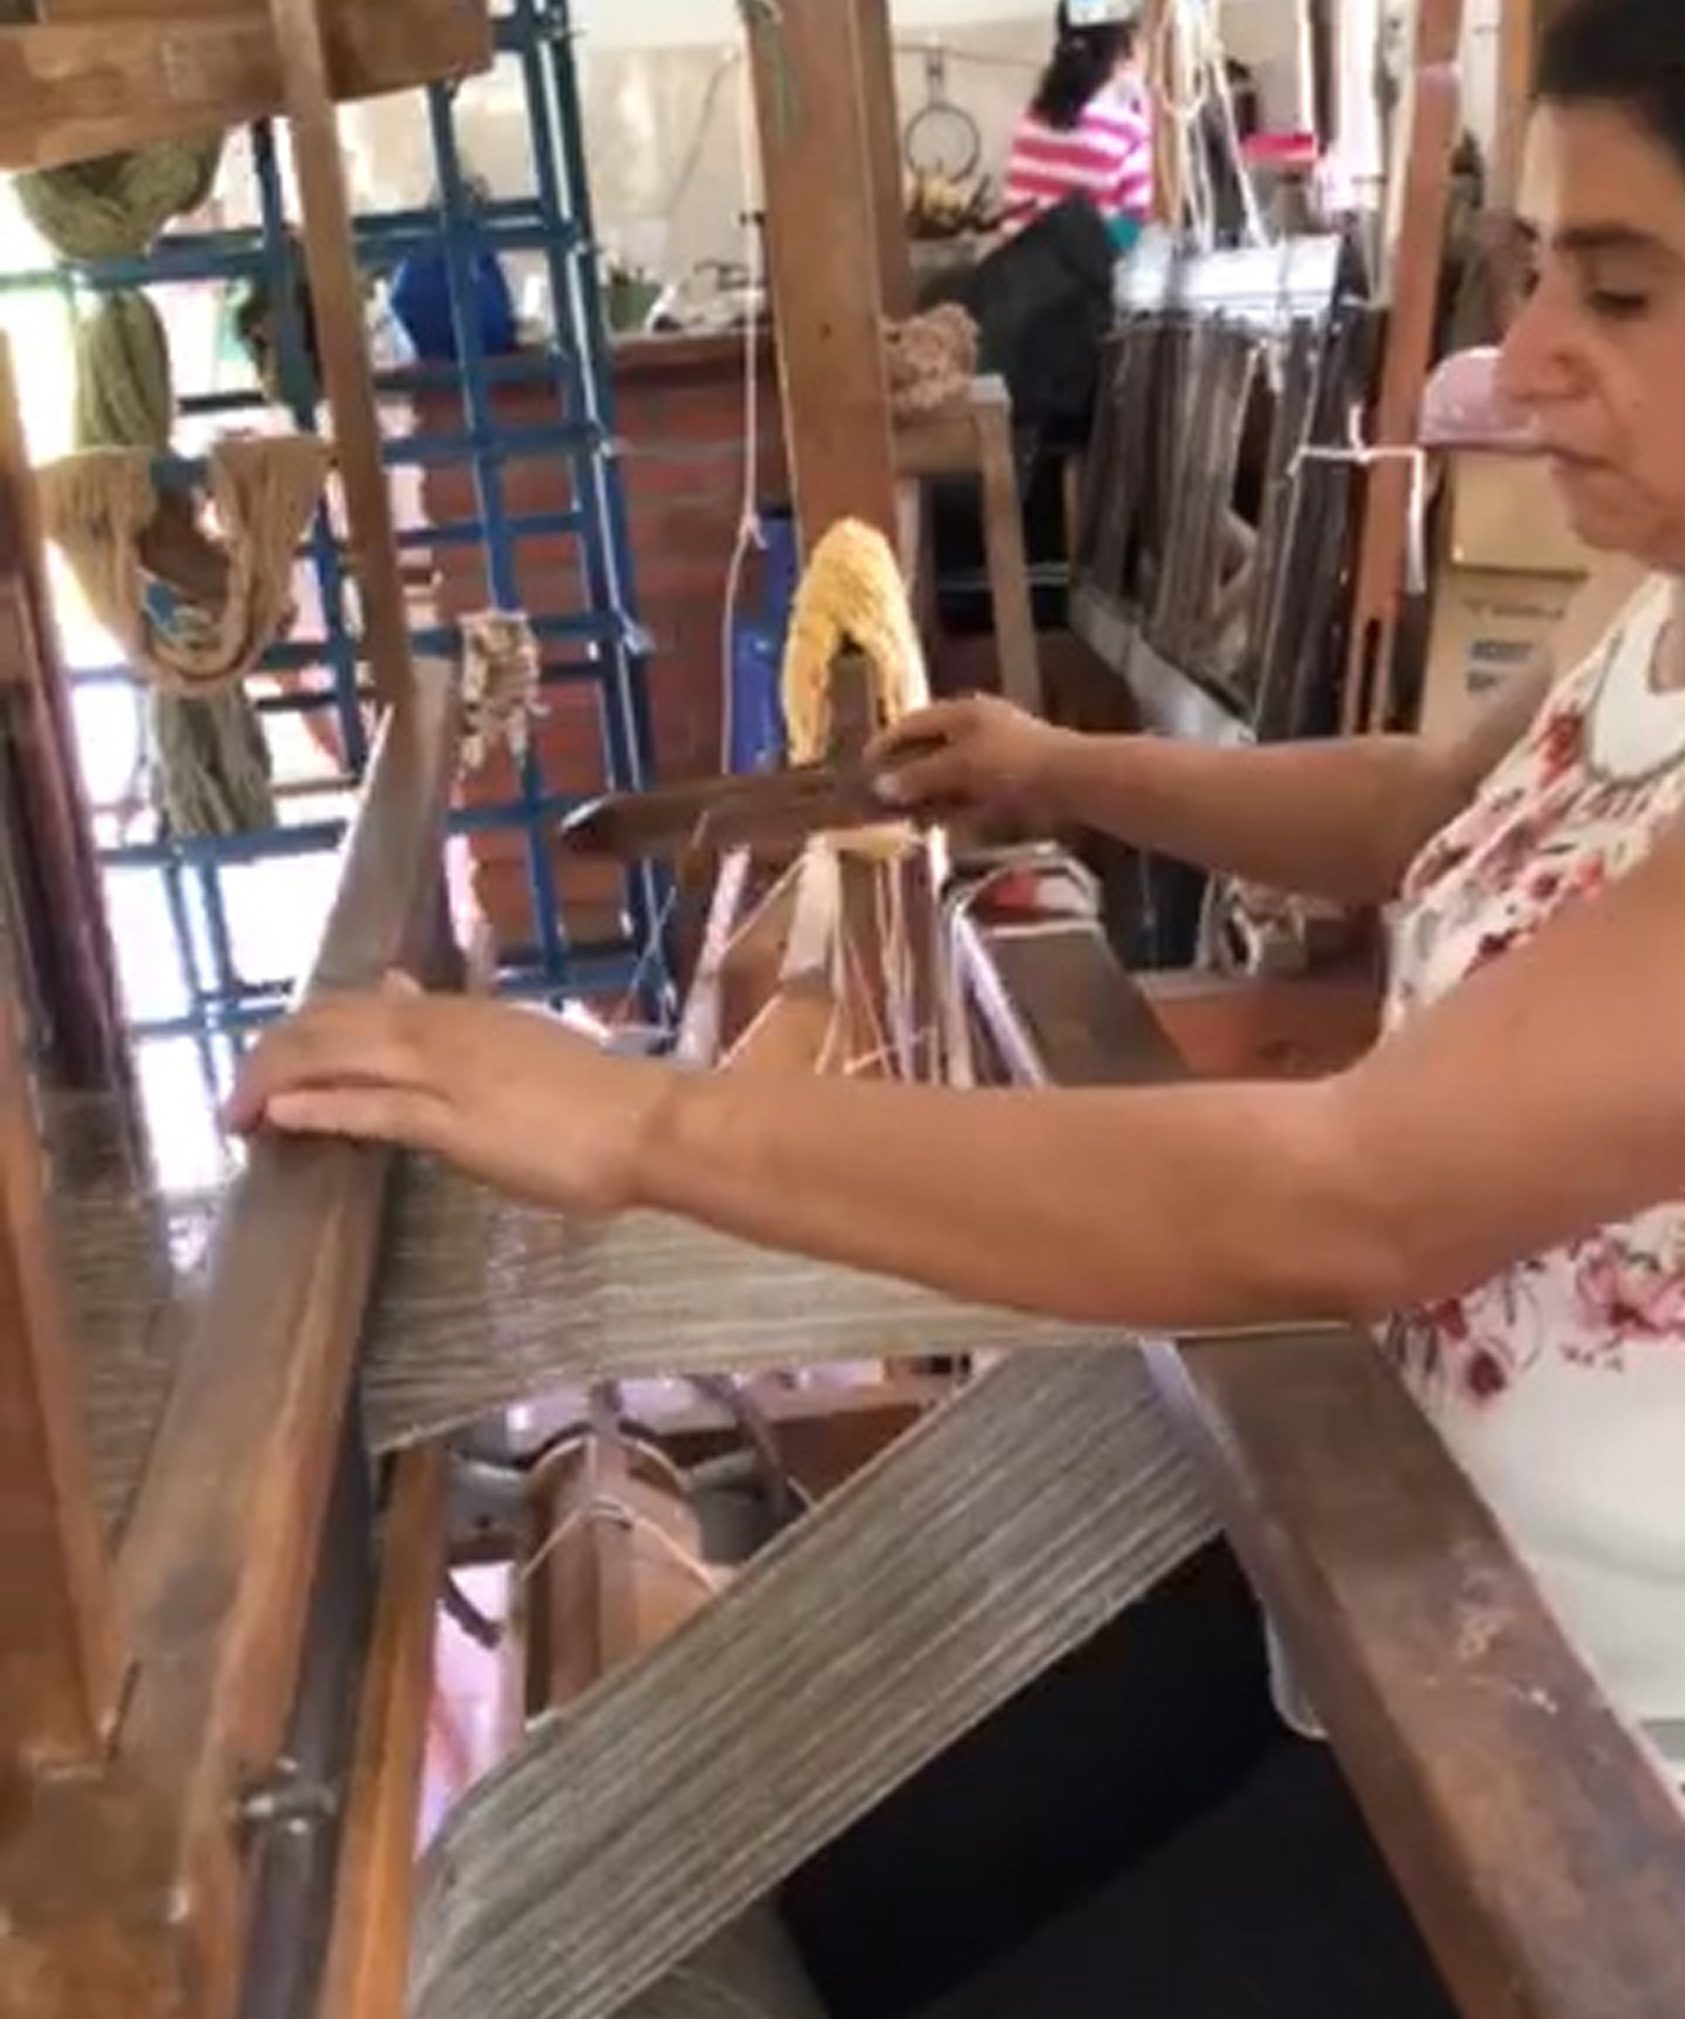 Tejido manual por artesana de Corporación del Lienzo, Charalá, Santander, Colombia, 2018 